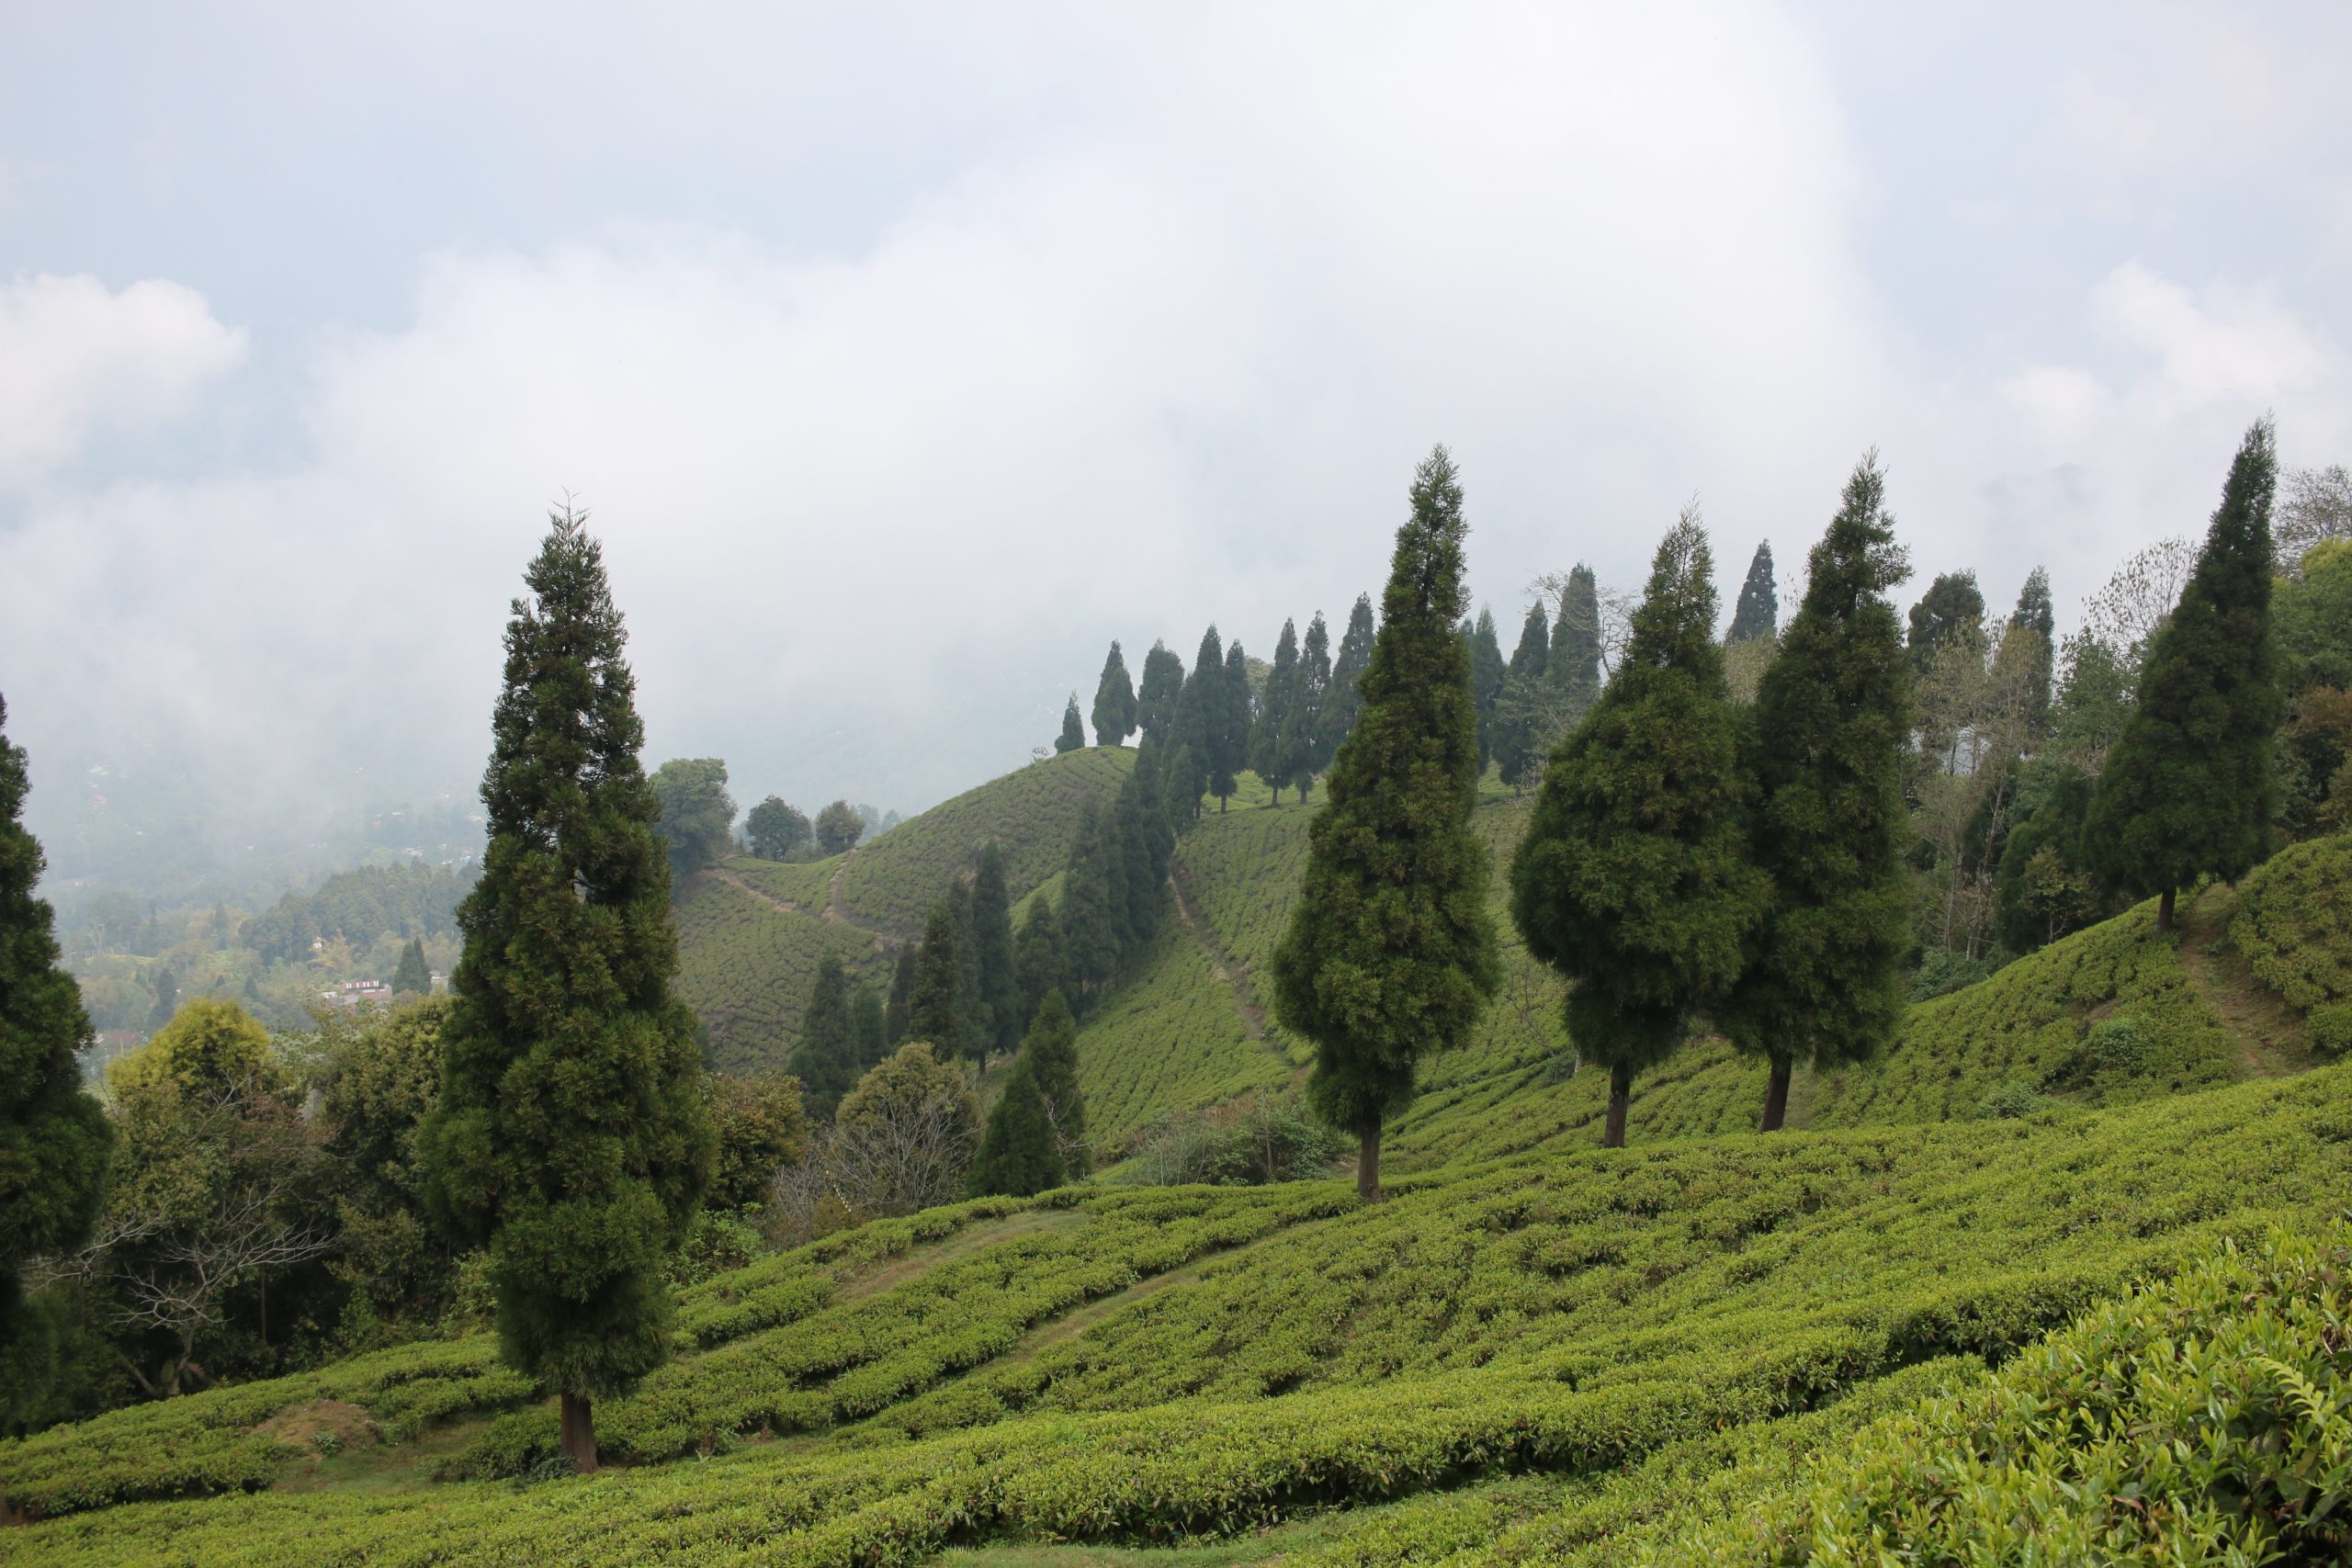 Darjeeling Tea Garden in India